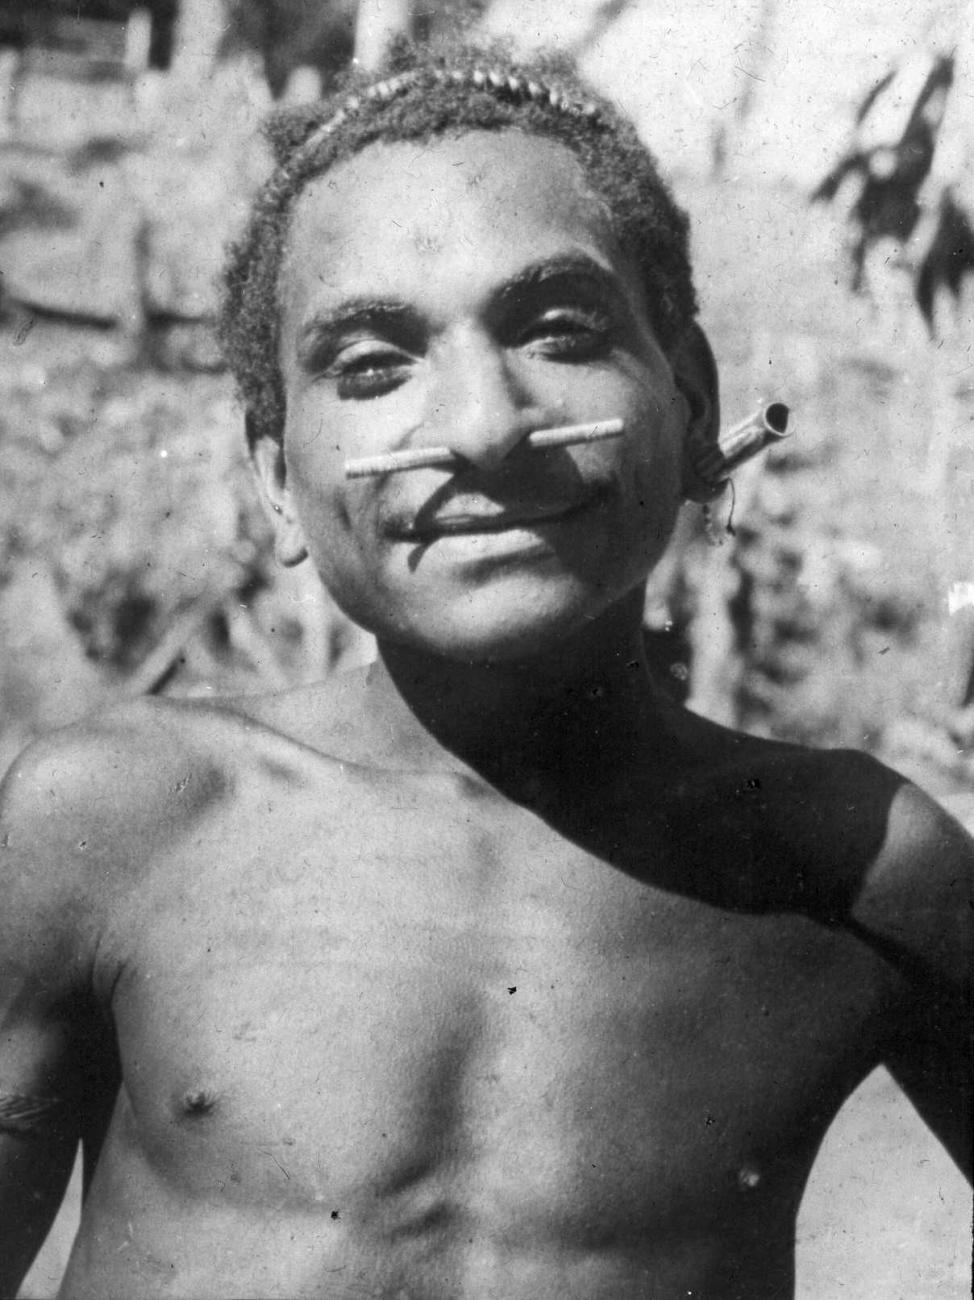 BD/66/452 - 
Portret van een Papoea-man uit het Mamberamo-gebied, met neus- en oorsieraden van bamboe
